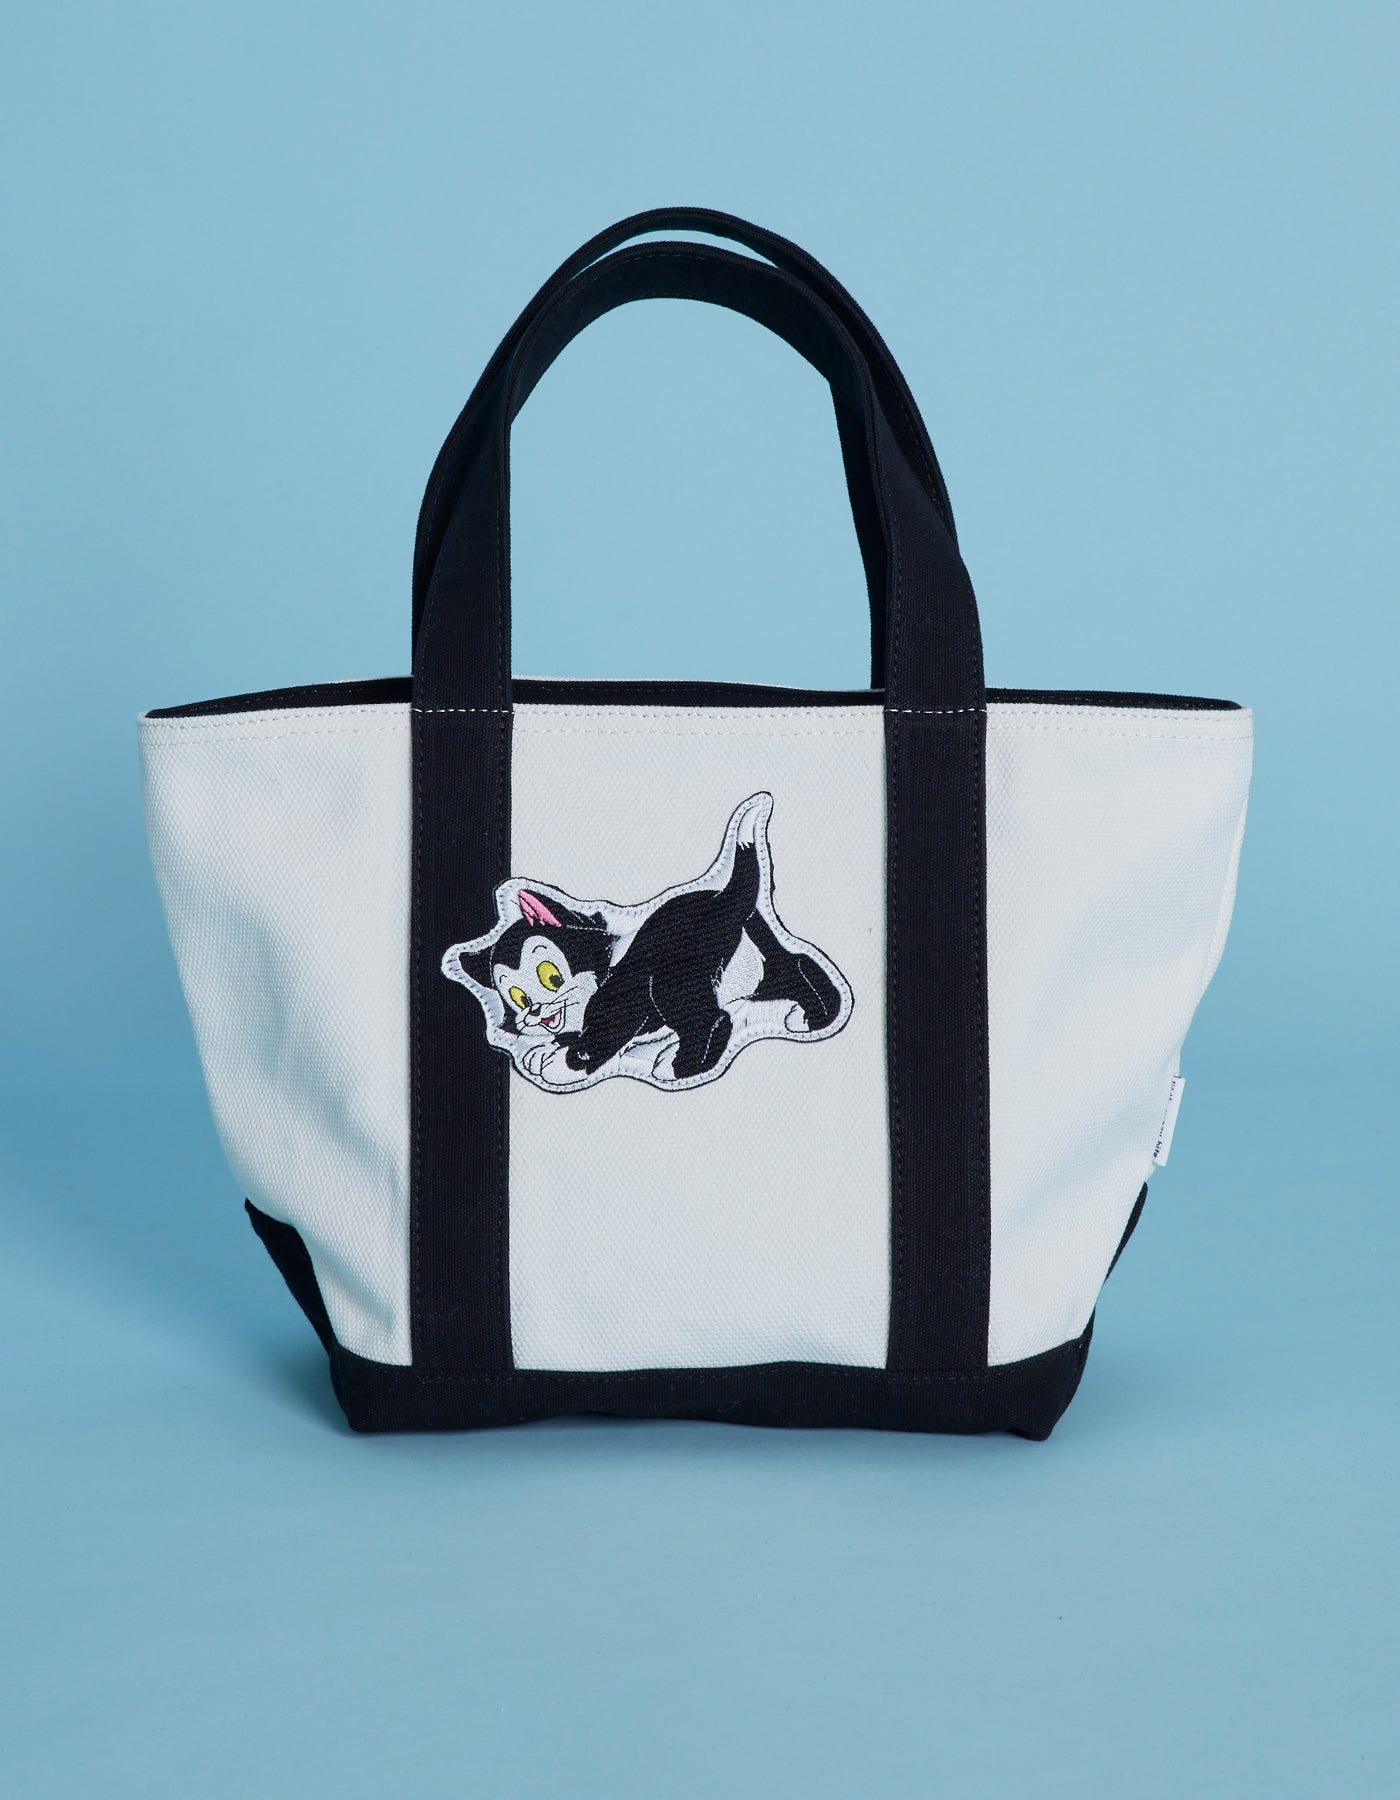 Disney character tote bag / BLACK